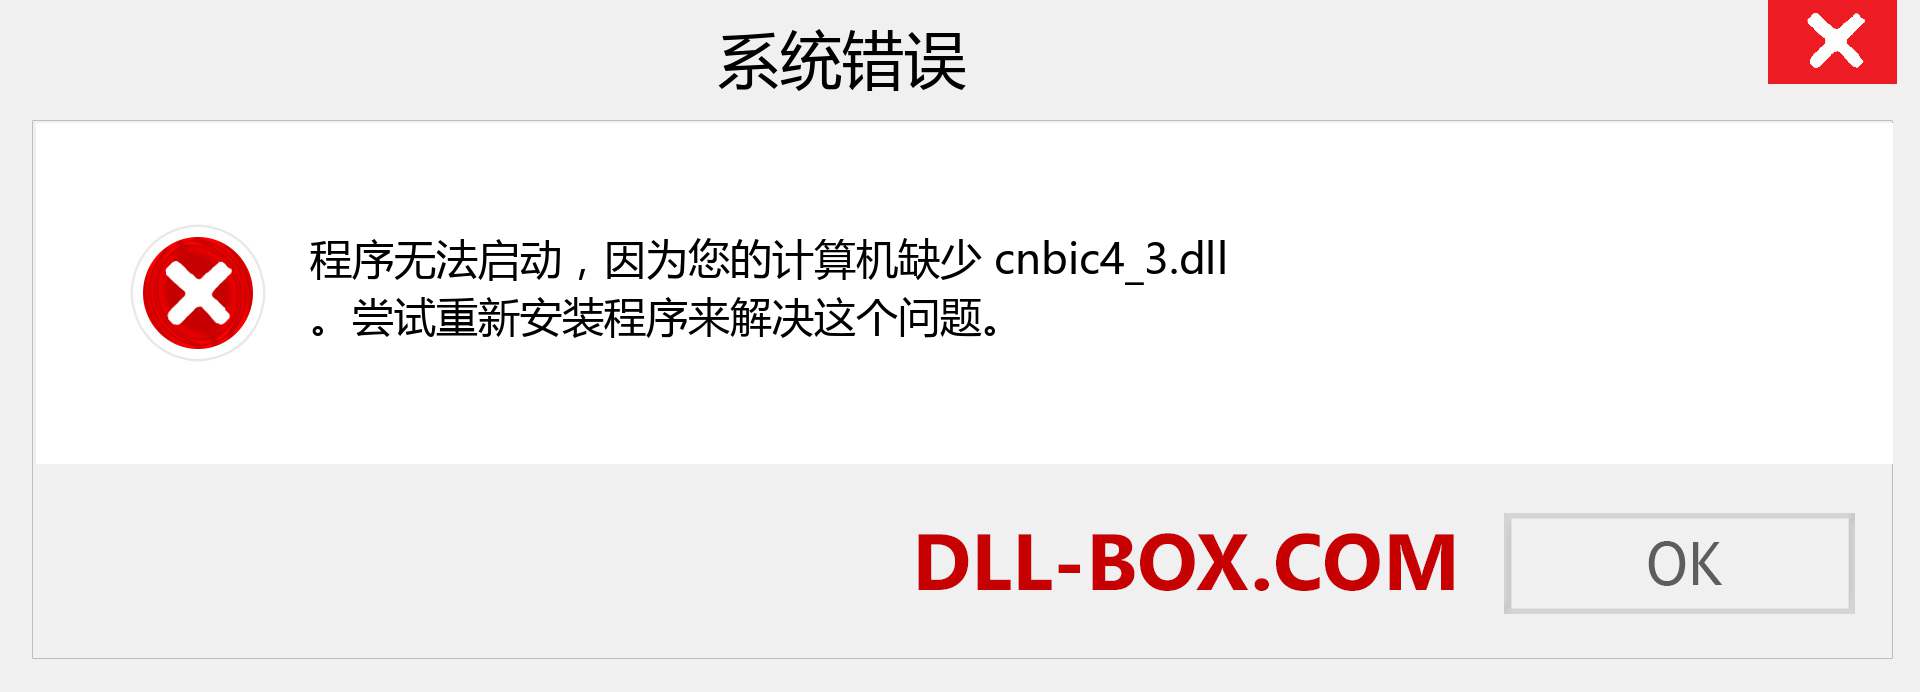 cnbic4_3.dll 文件丢失？。 适用于 Windows 7、8、10 的下载 - 修复 Windows、照片、图像上的 cnbic4_3 dll 丢失错误